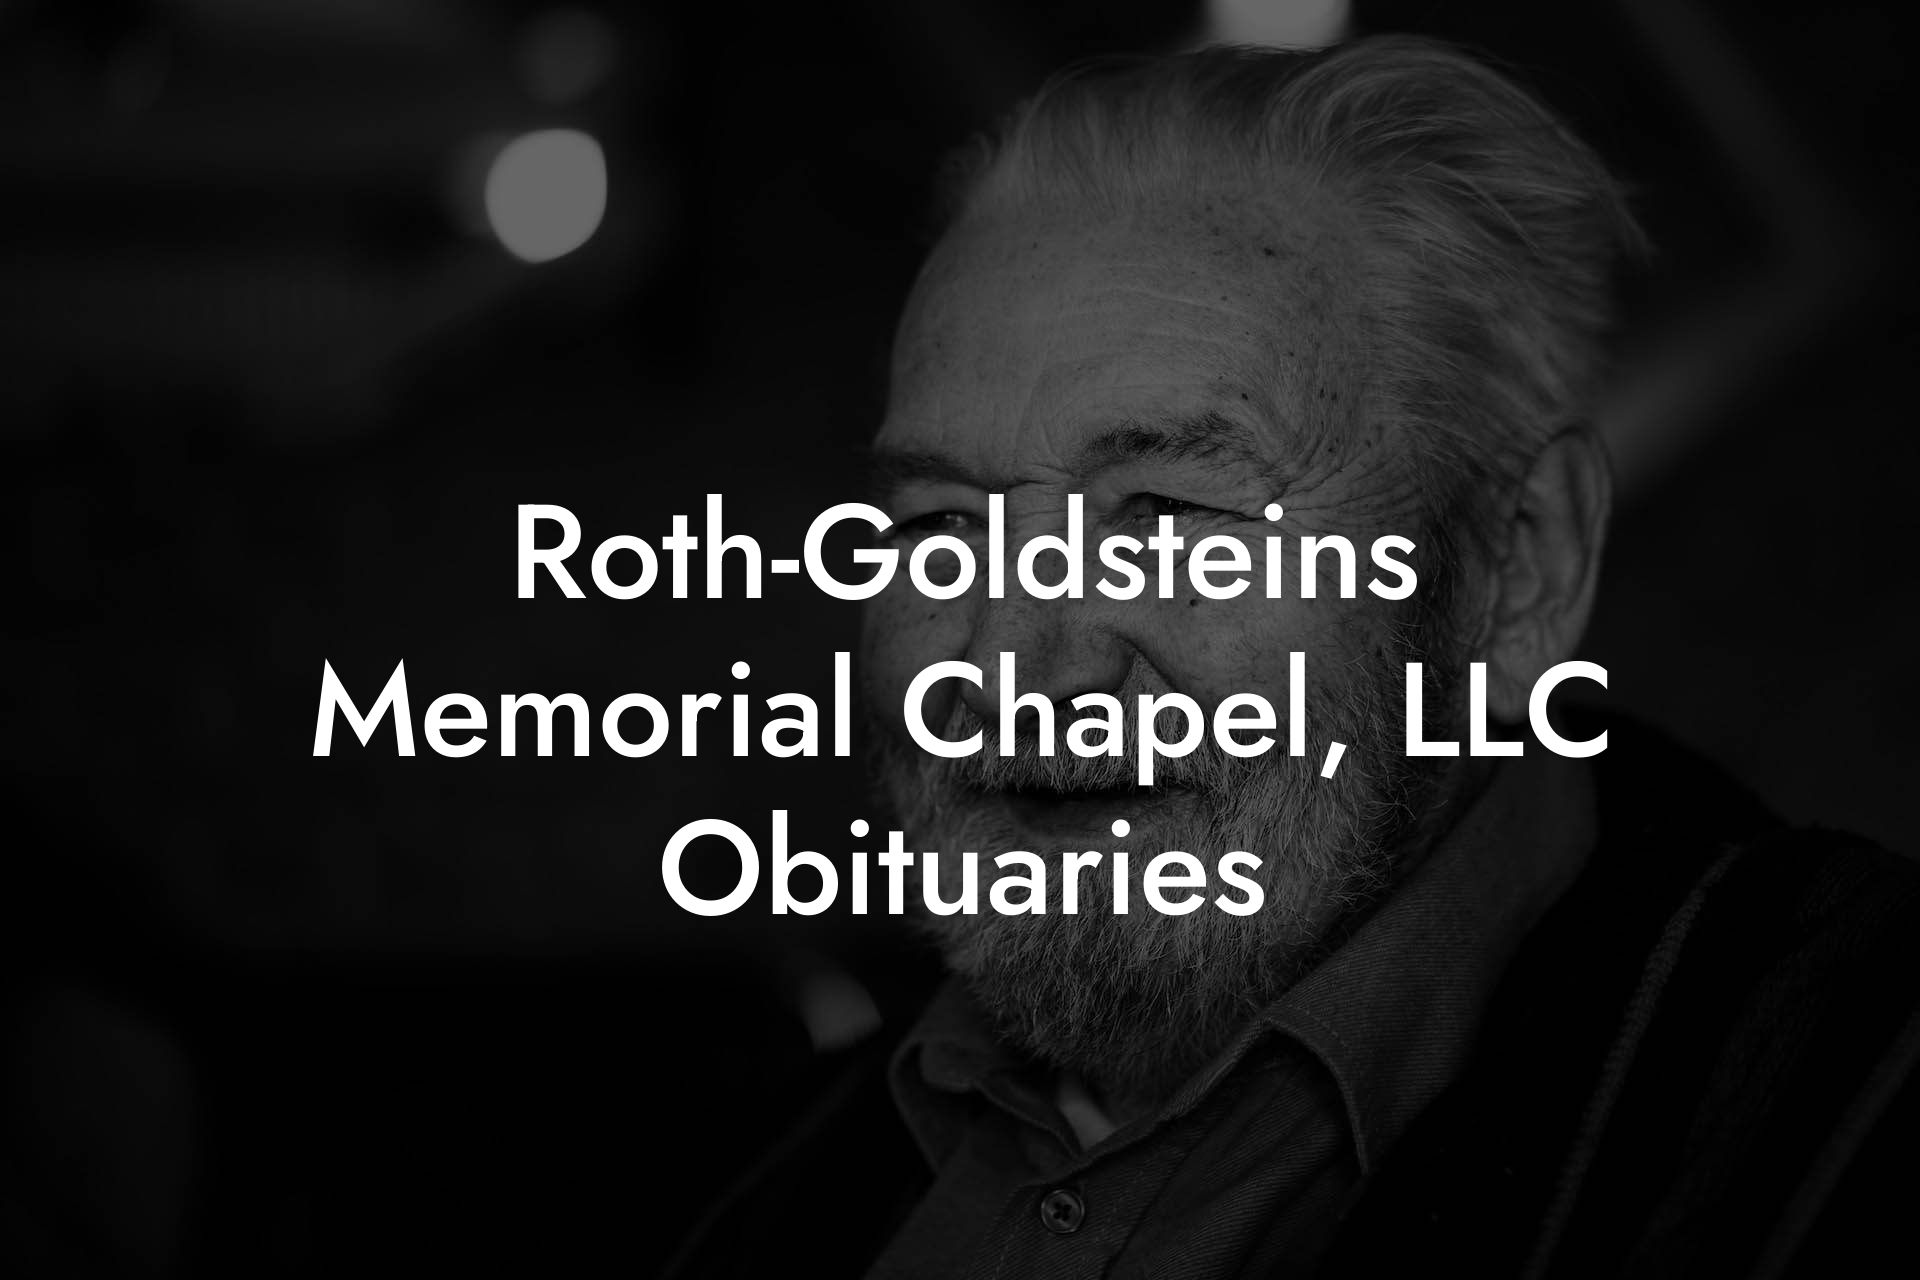 Roth-Goldsteins Memorial Chapel, LLC Obituaries